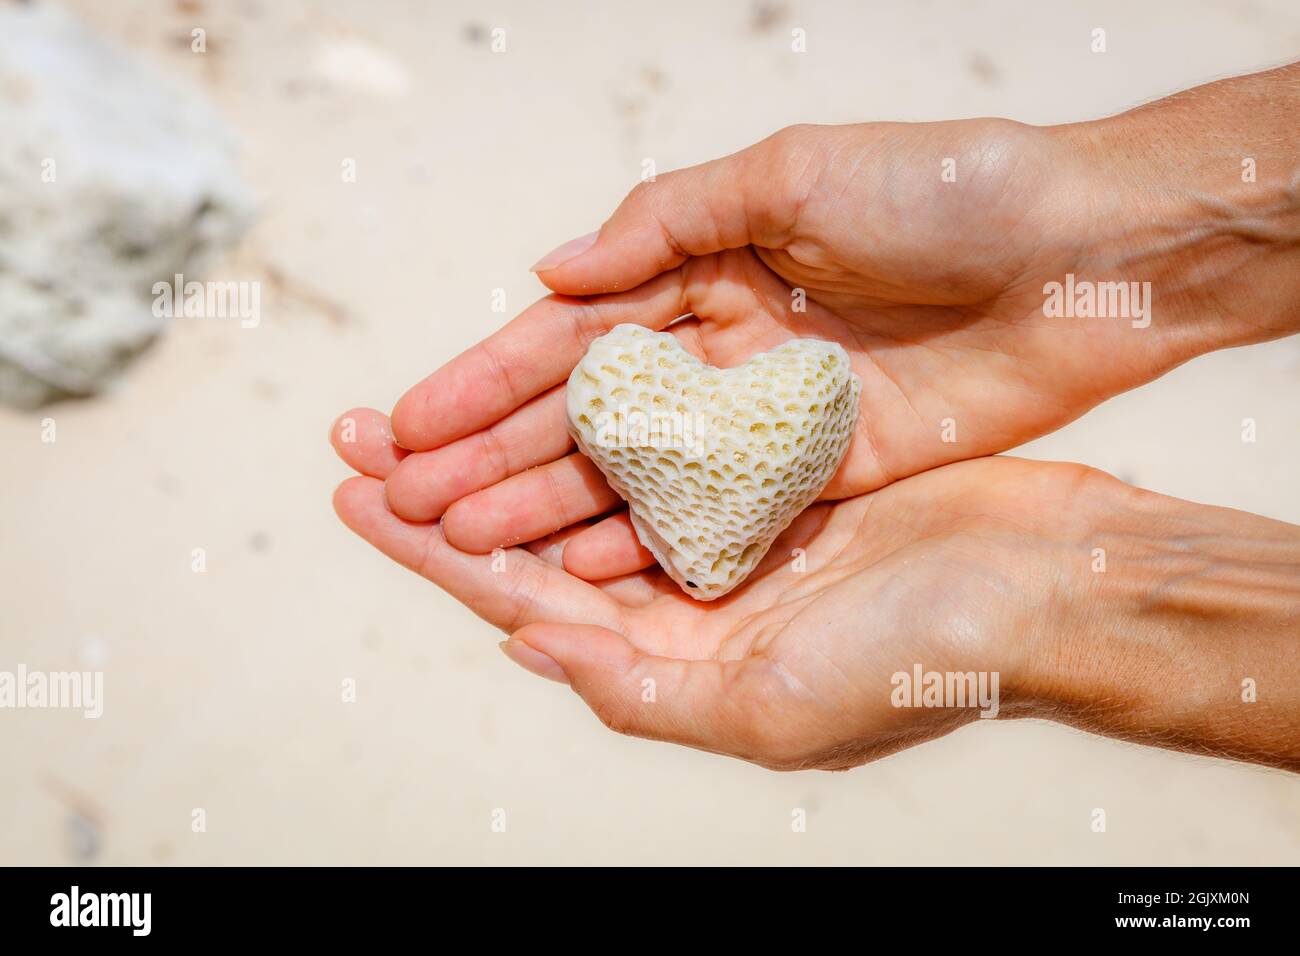 Corail en forme de coeur dans le sable au bord de l'arrière-plan. L'île de Boracay, Philippines. Concept d'aires marines de conservation et la protection des océans. Avec l'espace. Banque D'Images